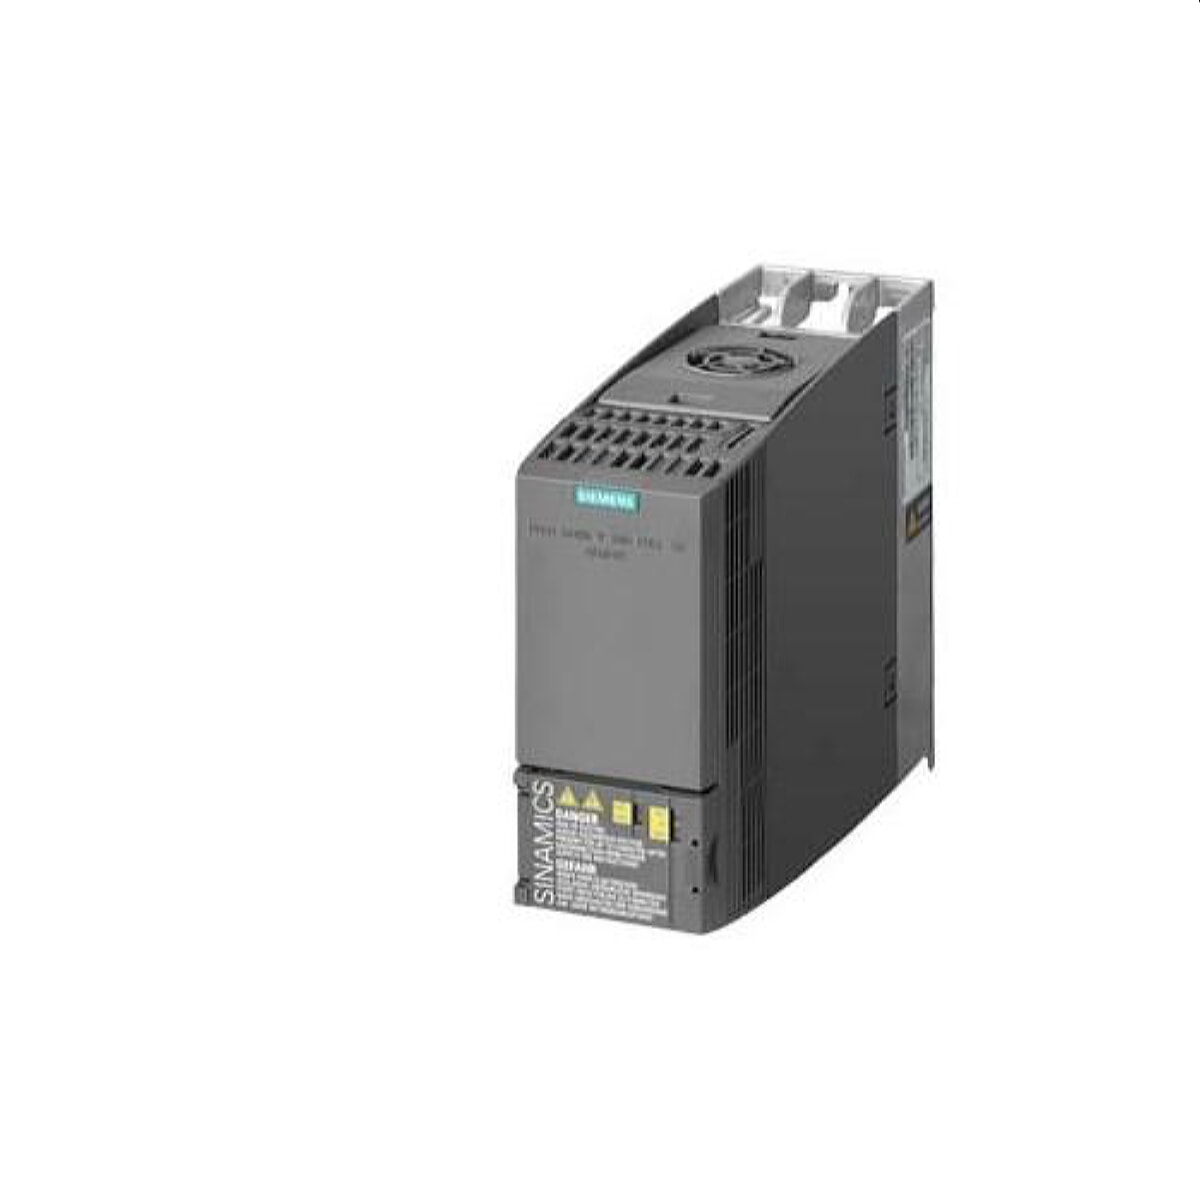 Siemens Kompaktumrichter 6SL3210-1KE18-8AB1